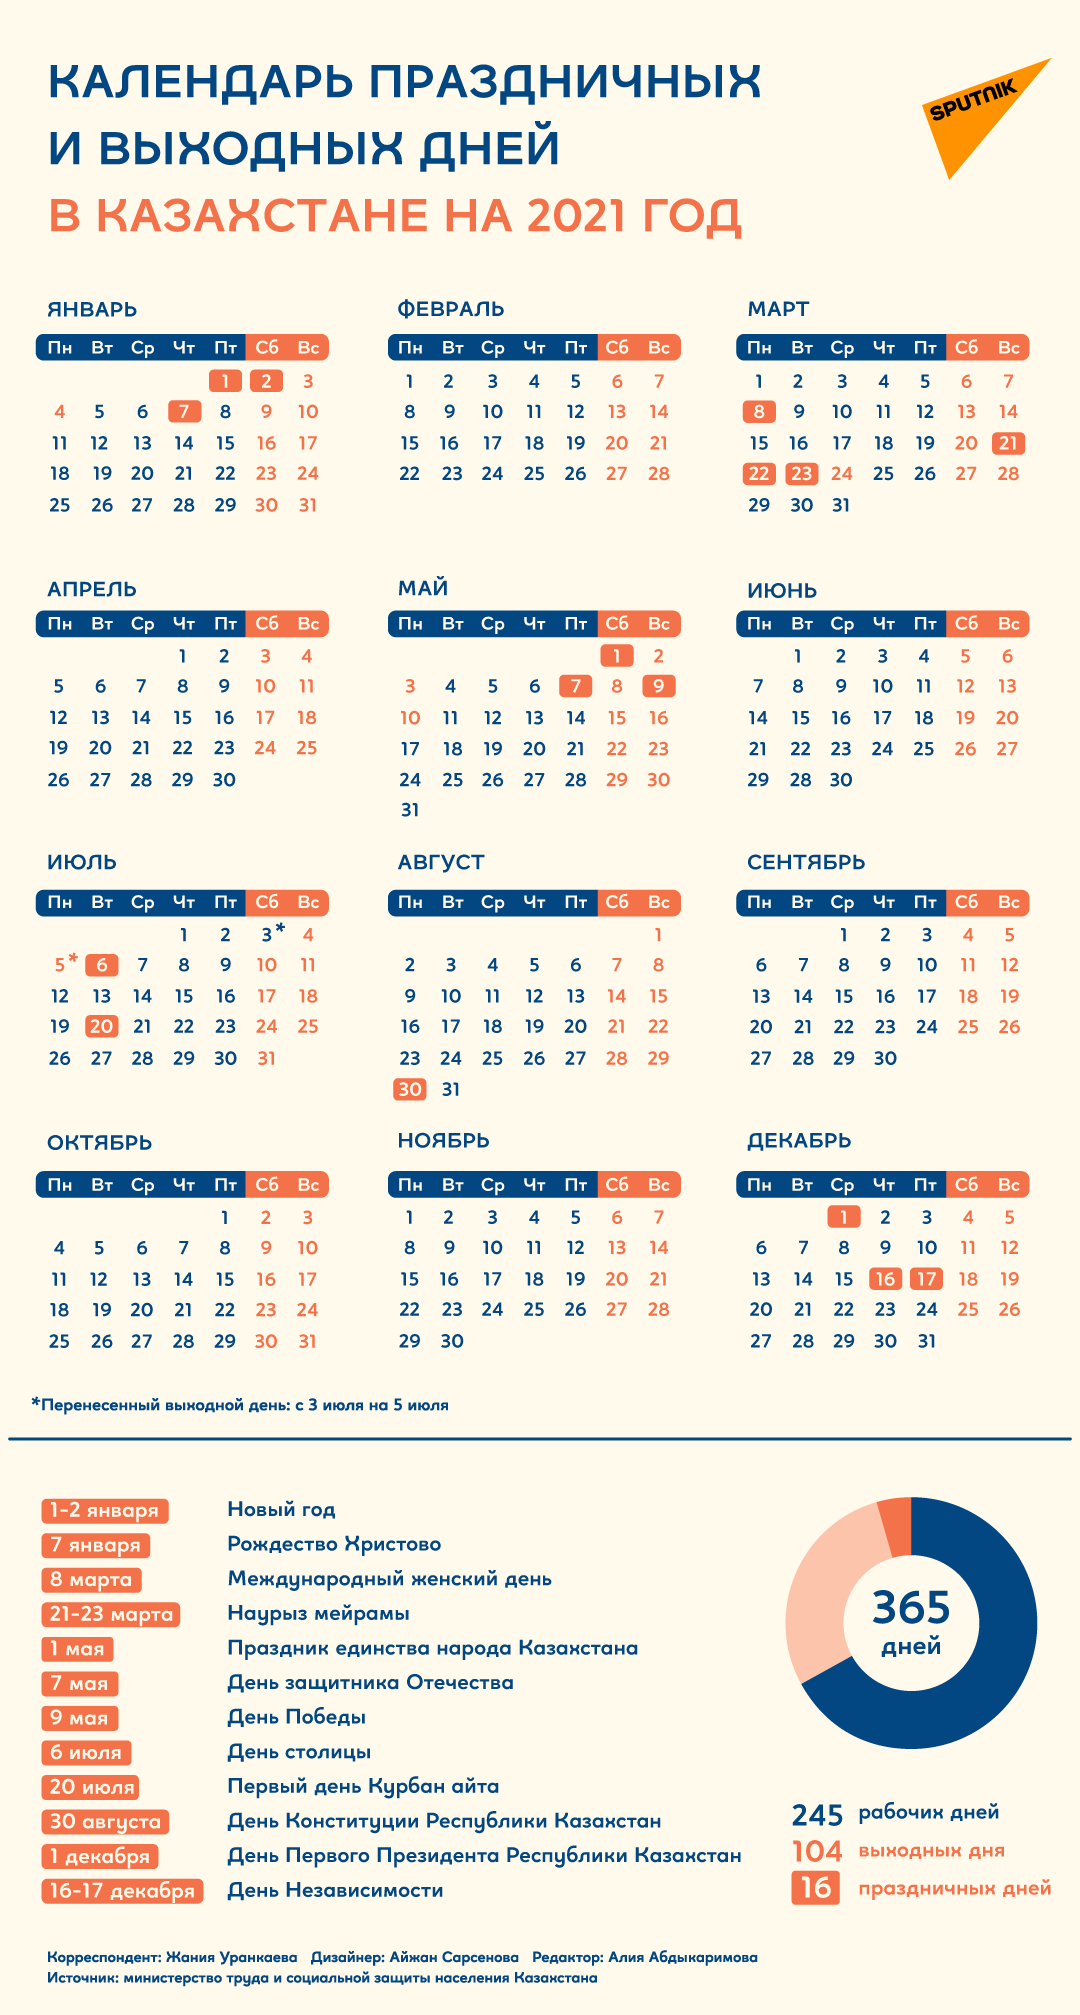 1 мая: что за праздник + особенности даты